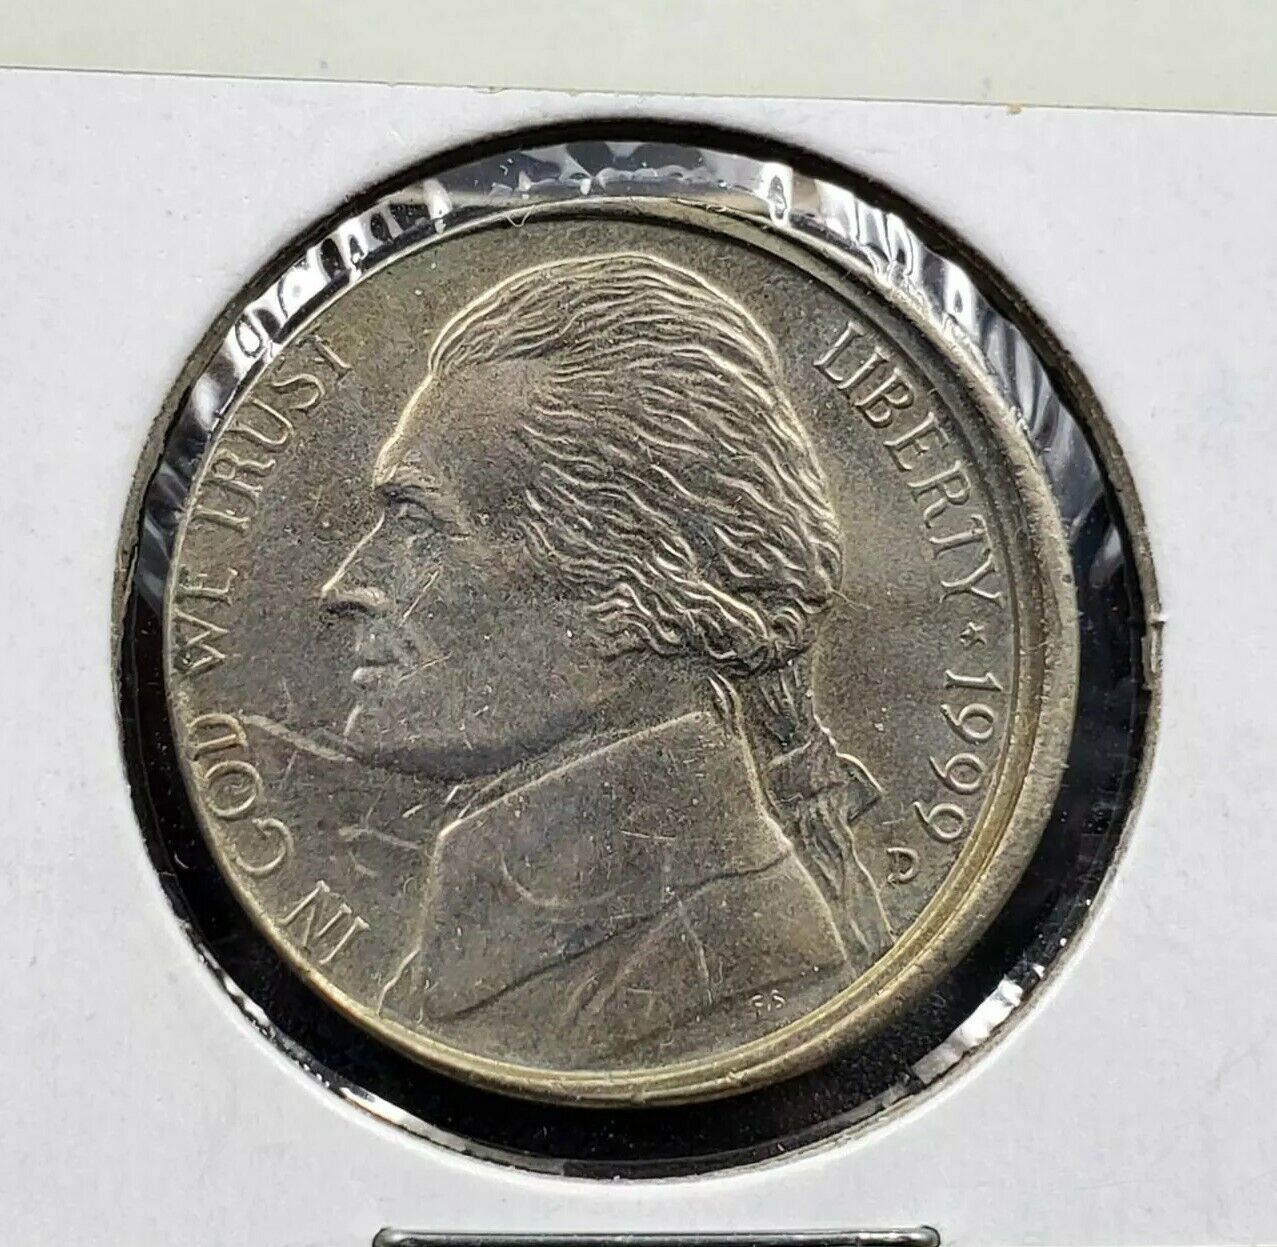 1999 D 5c BU Jefferson Nickel Misaligned Die Error Coin UNC